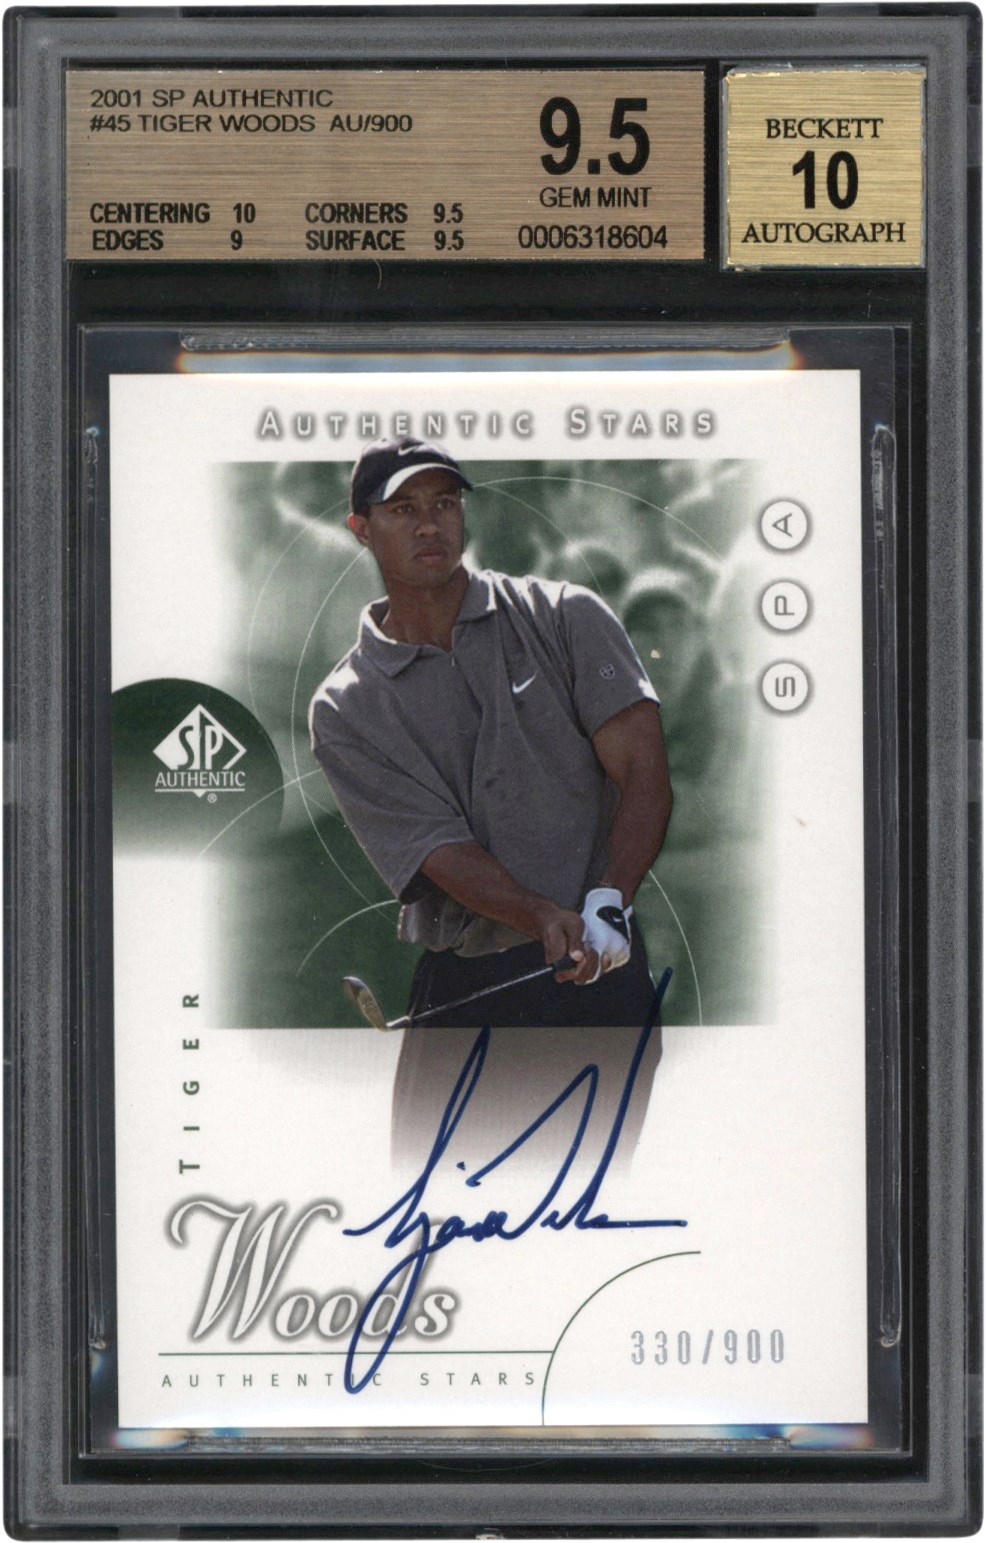 - 2001 SP Authentic Golf #45 Tiger Woods Autograph Rookie Card #330/900 BGS GEM MINT 9.5 Auto 10